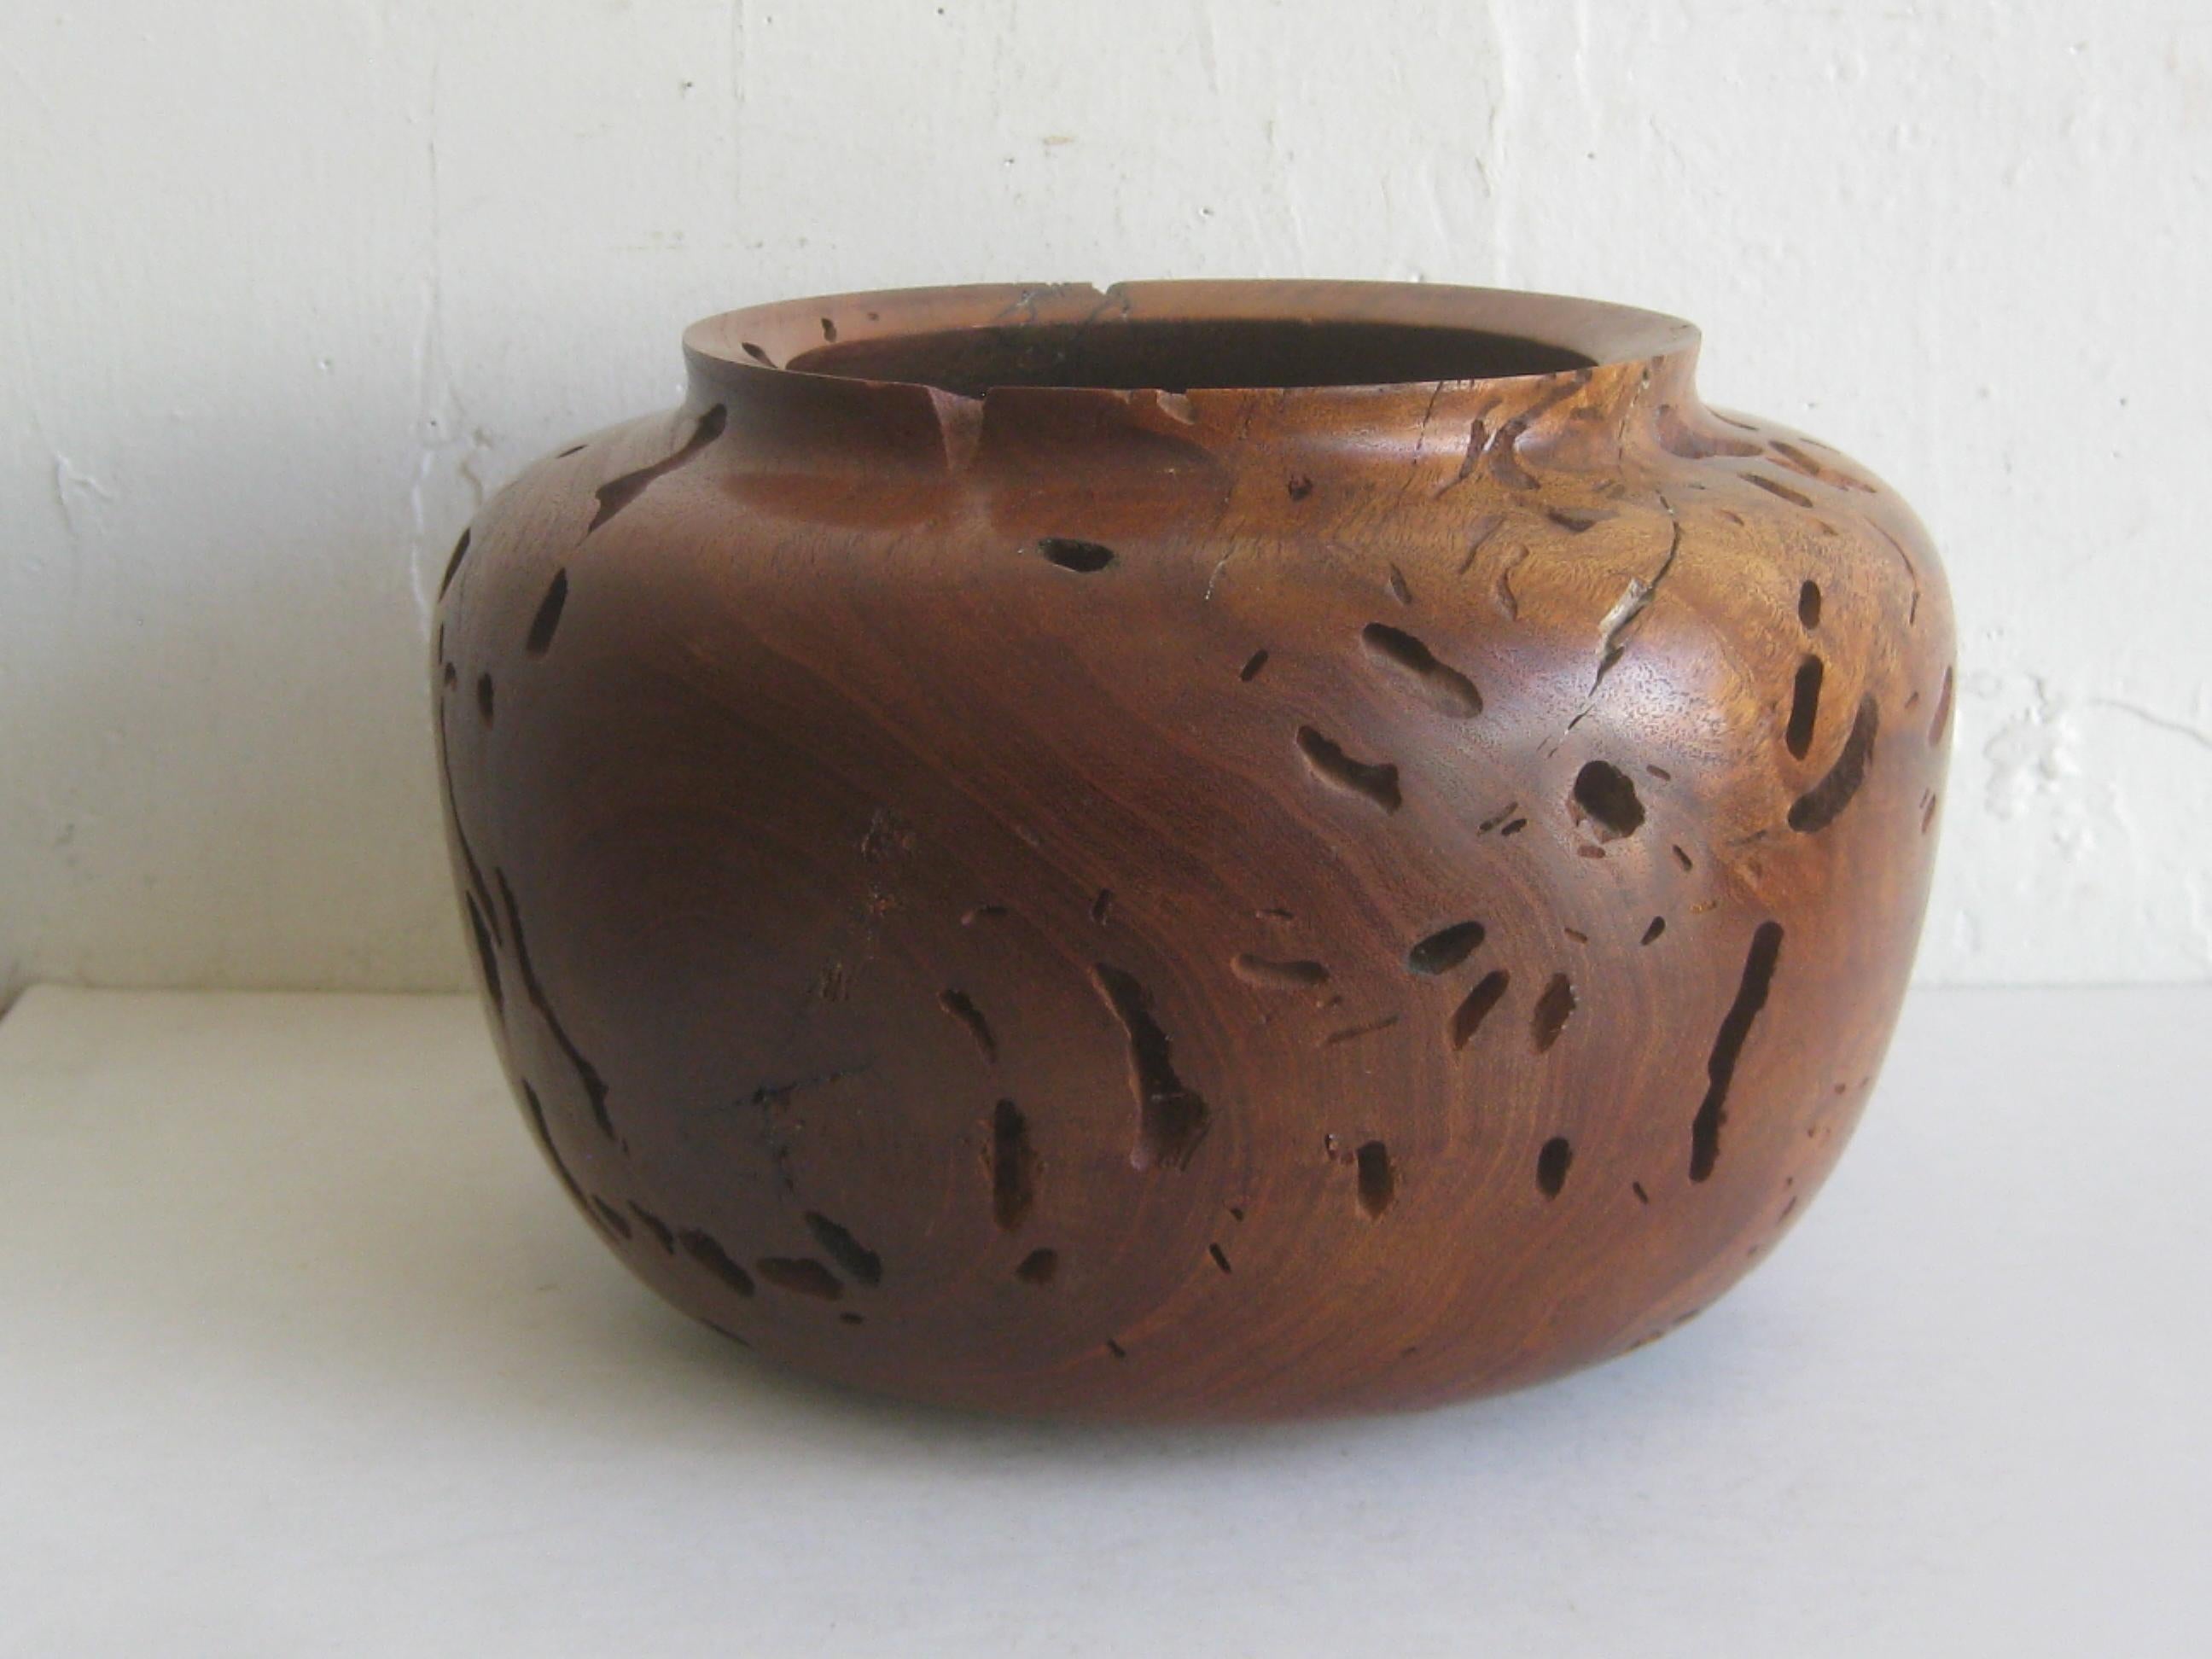 Pièce d'exception ! Magnifique bol organique de forme libre en bois de mesquite à bord vif, créé par l'artiste Norman Harrison. Signé et daté de 2003 sur le bas. Fabriqué à Yuma, en Arizona. Merveilleuse couleur et forme. Mesure 9 1/2